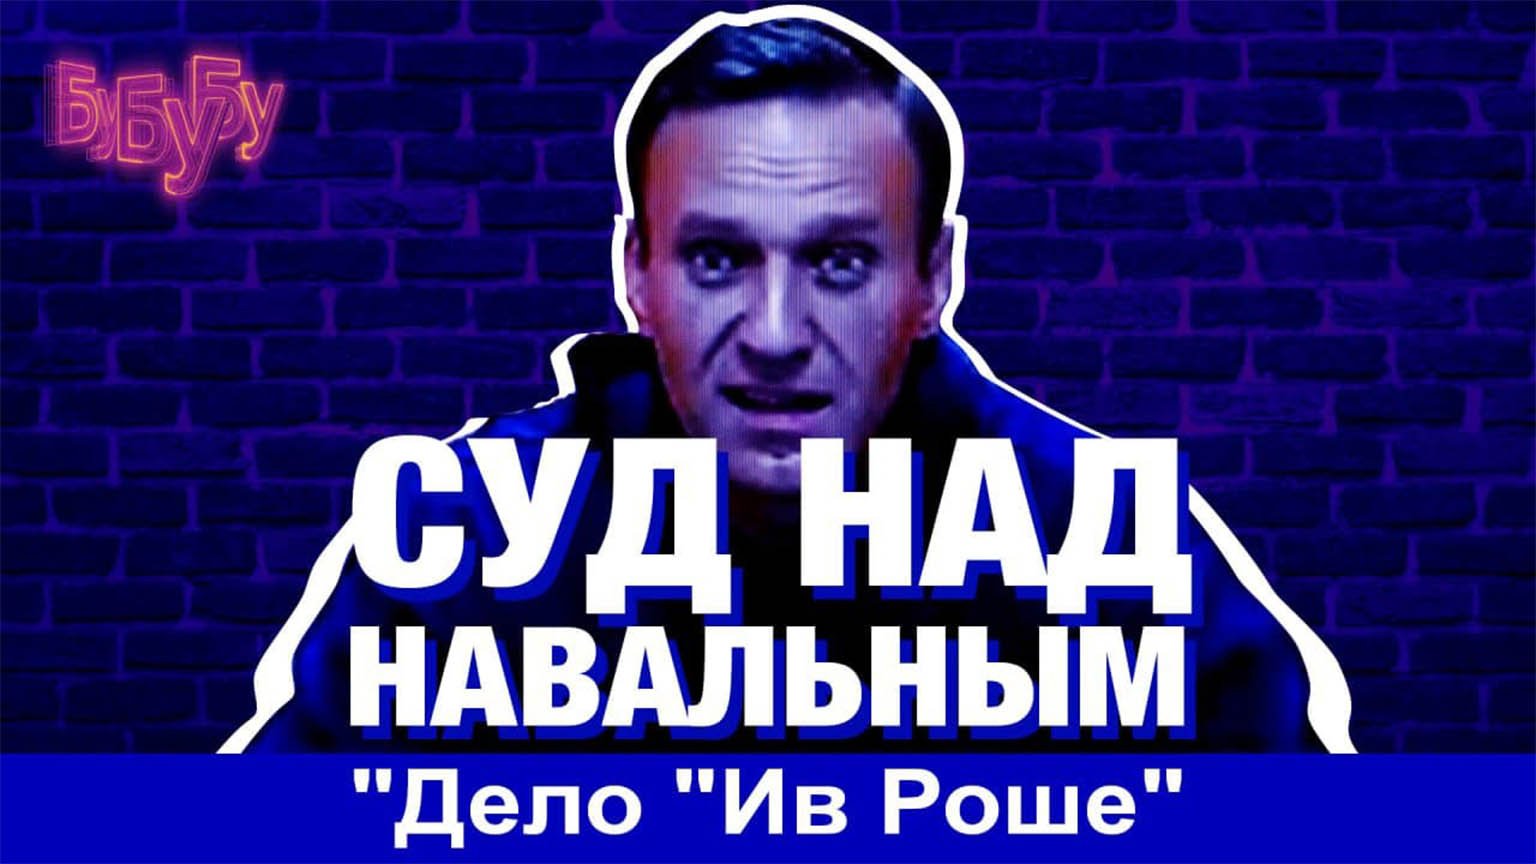 Суд над Навальным 2 февраля. Прямая трансляция.